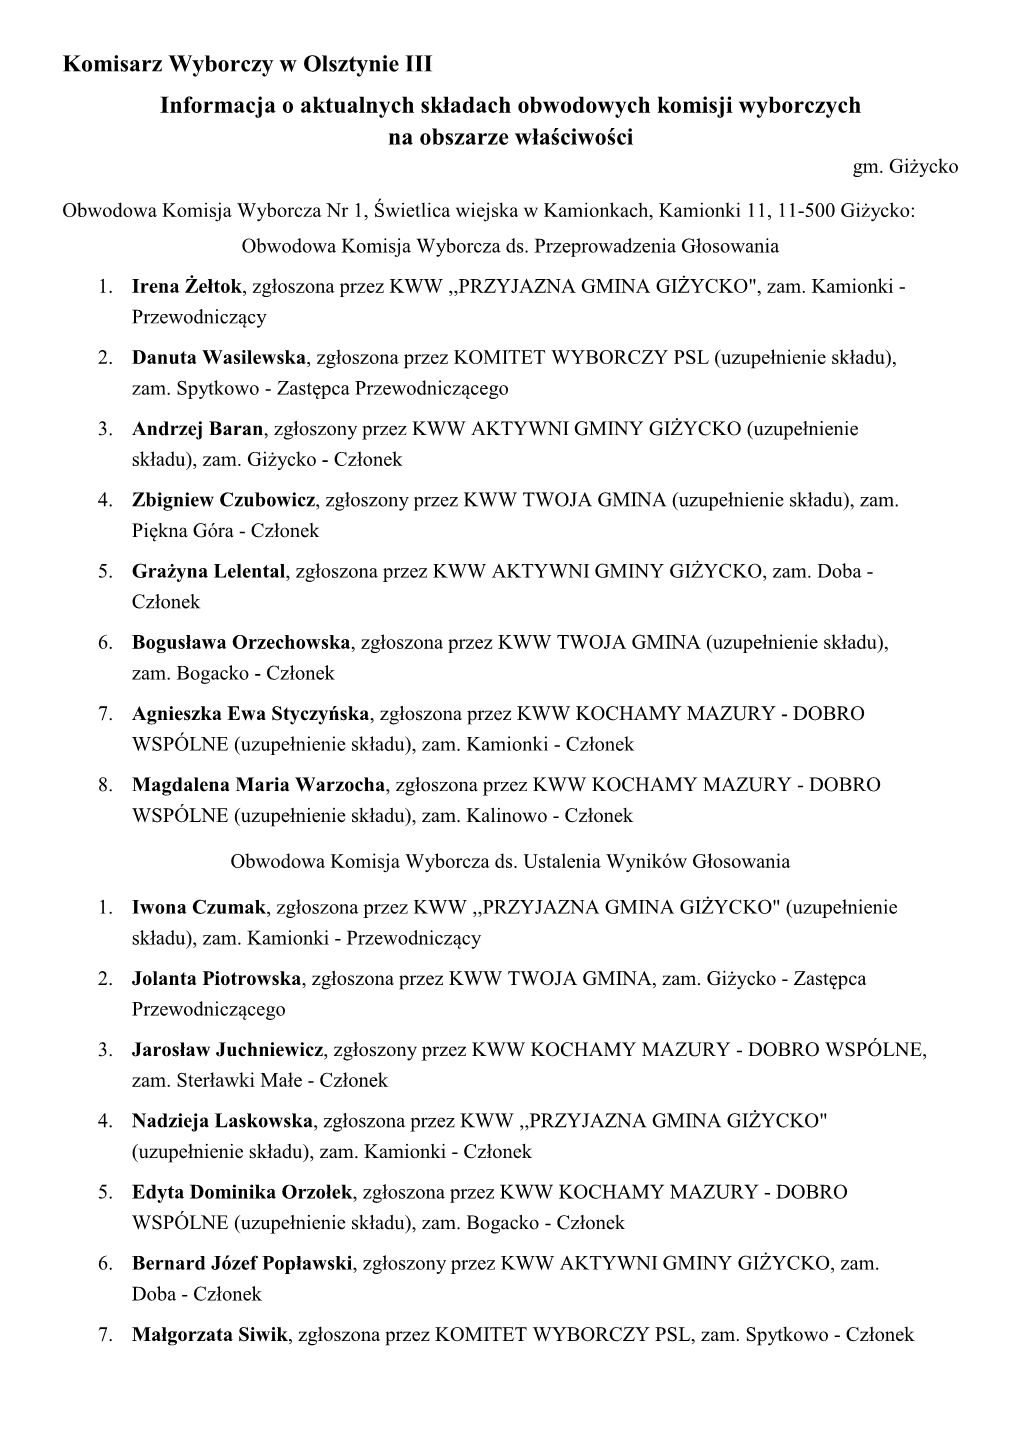 Komisarz Wyborczy W Olsztynie III Informacja O Aktualnych Składach Obwodowych Komisji Wyborczych Na Obszarze Właściwości Gm